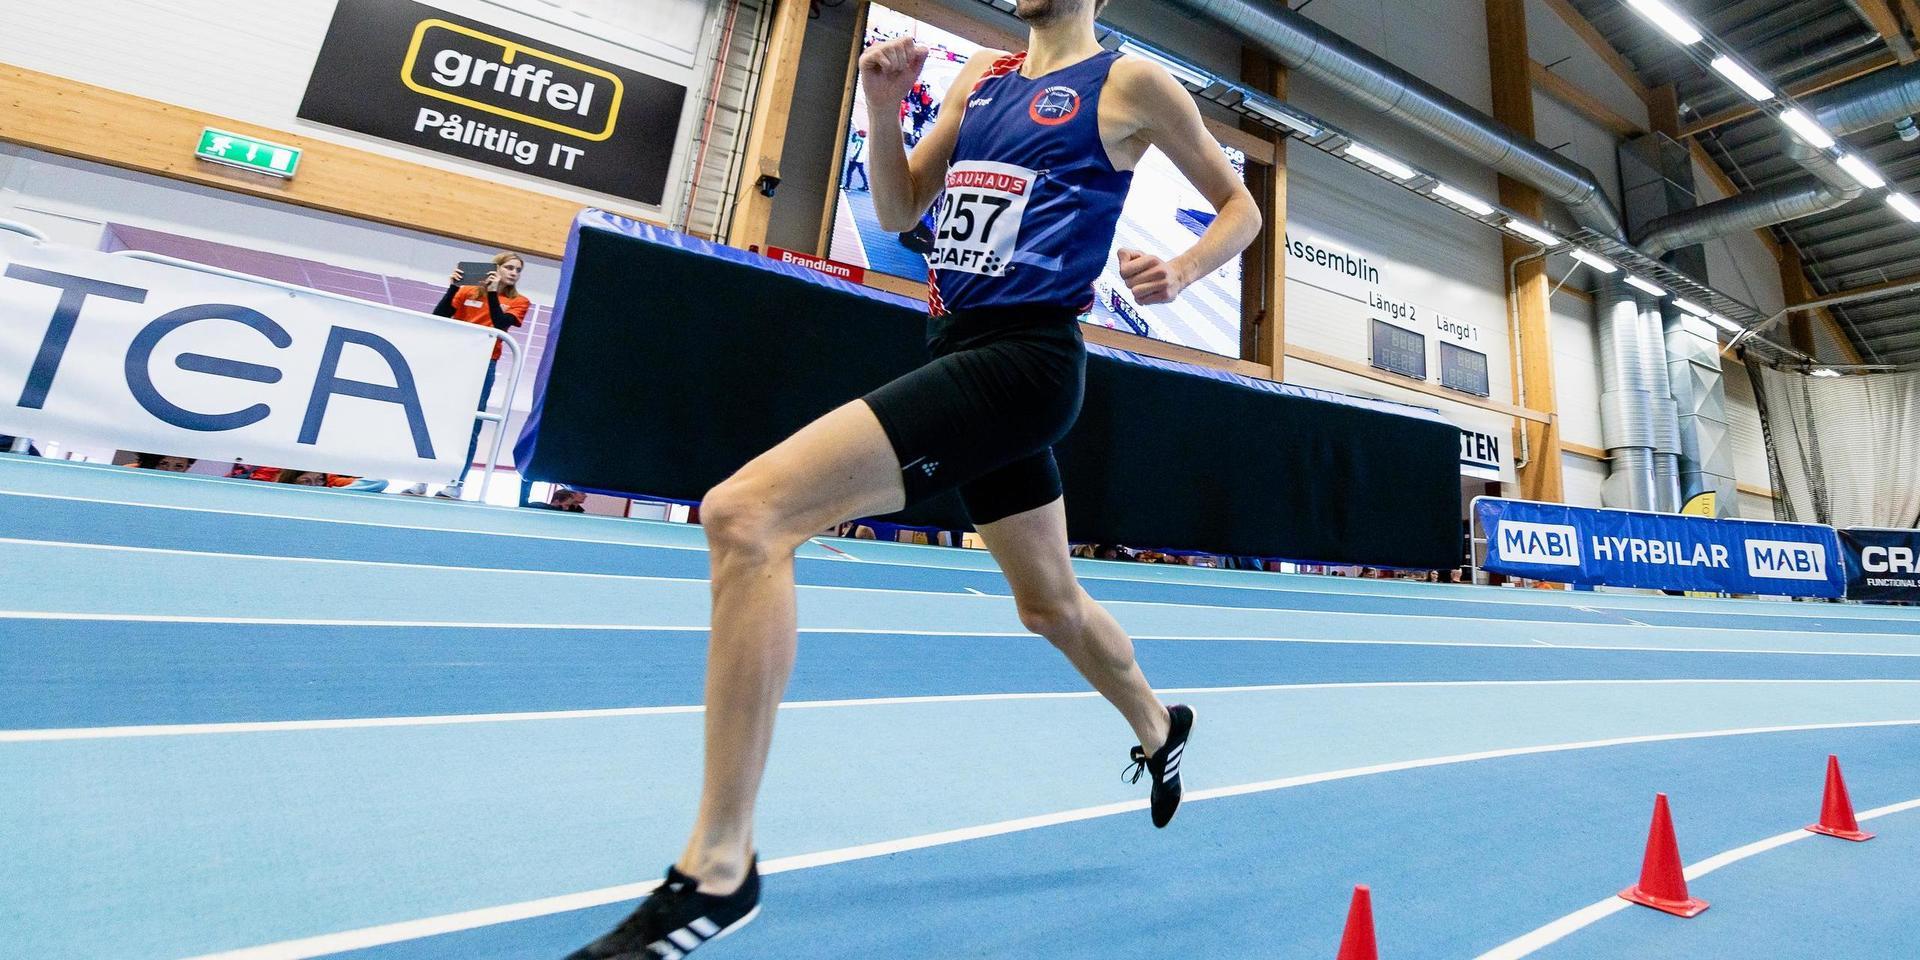 Regerande svenske mästaren Johan Rogestedt, Stenungsunds FI tog sig enkelt till söndagens SM-final på 1500 meter.